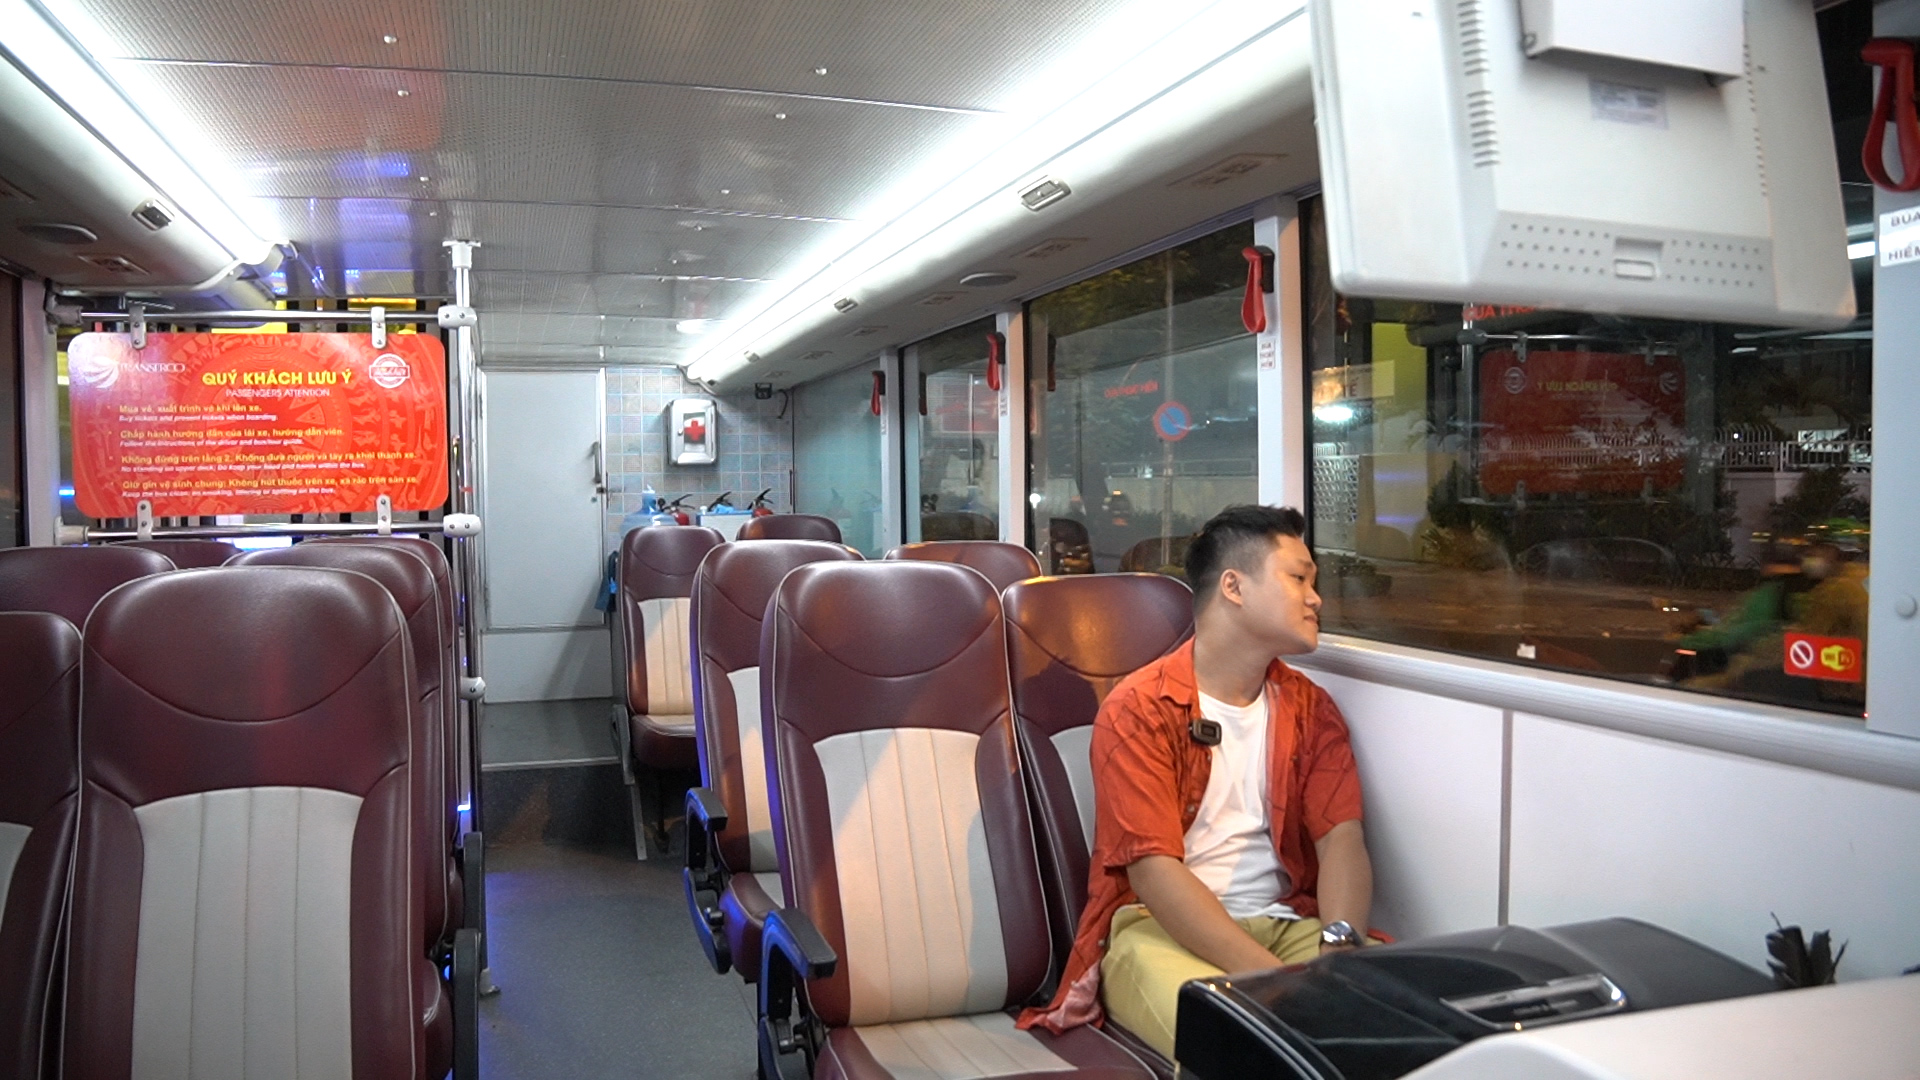 Trải nghiệm đi xe buýt 2 tầng xuyên đêm ngắm Sài Gòn lung linh trong ánh đèn- Ảnh 2.